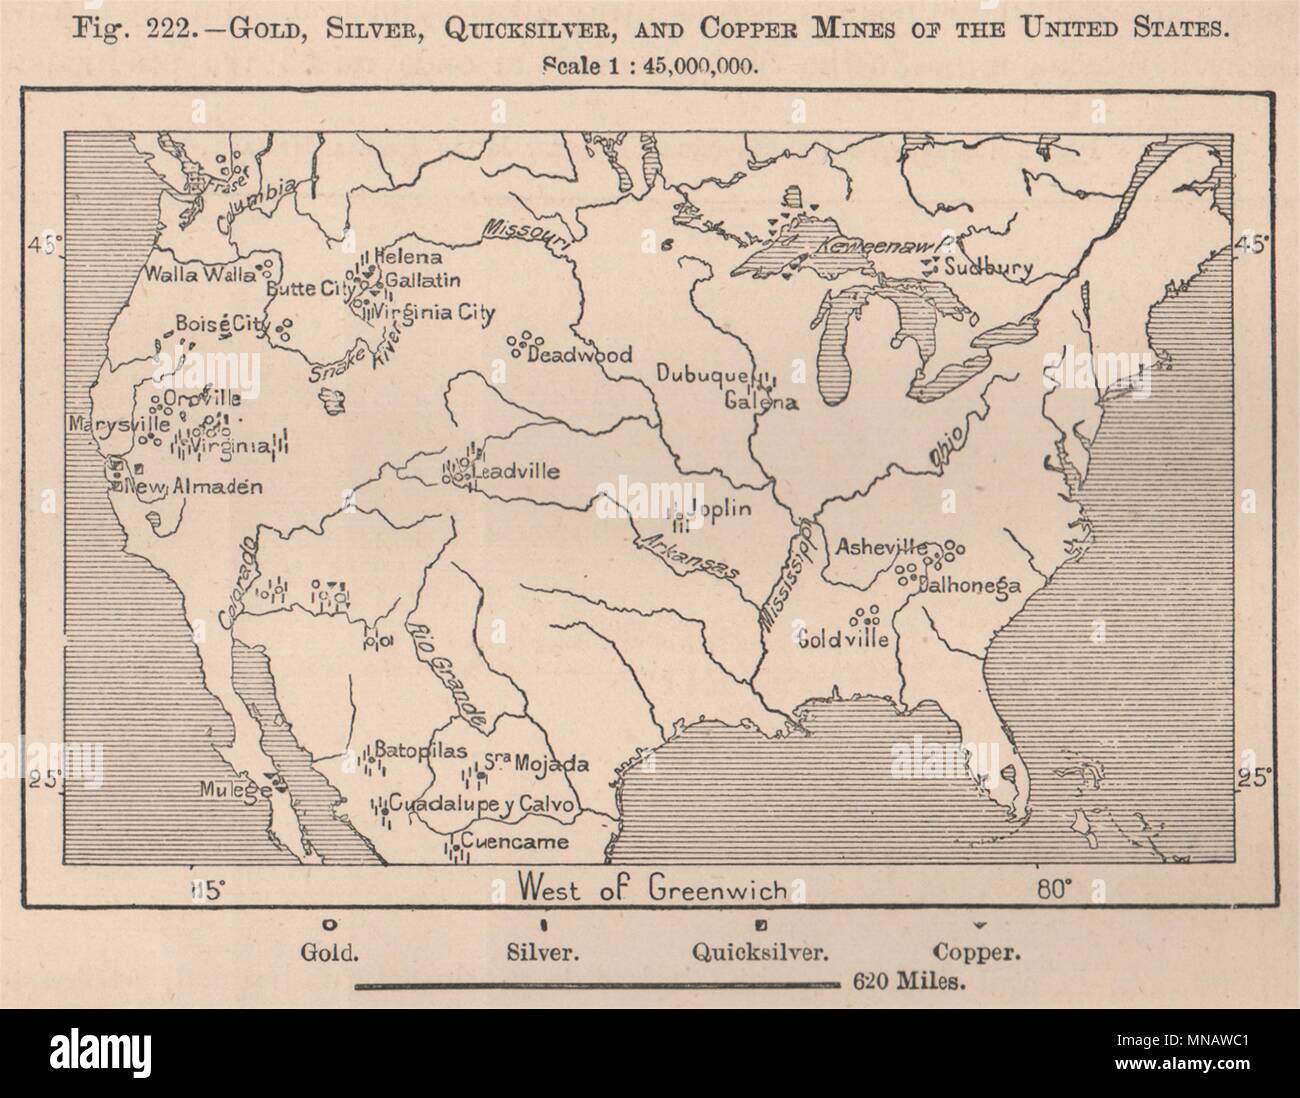 Oro Argento Quicksilver(Mercurio)miniere di rame degli Stati Uniti.USA 1885 mappa Foto Stock